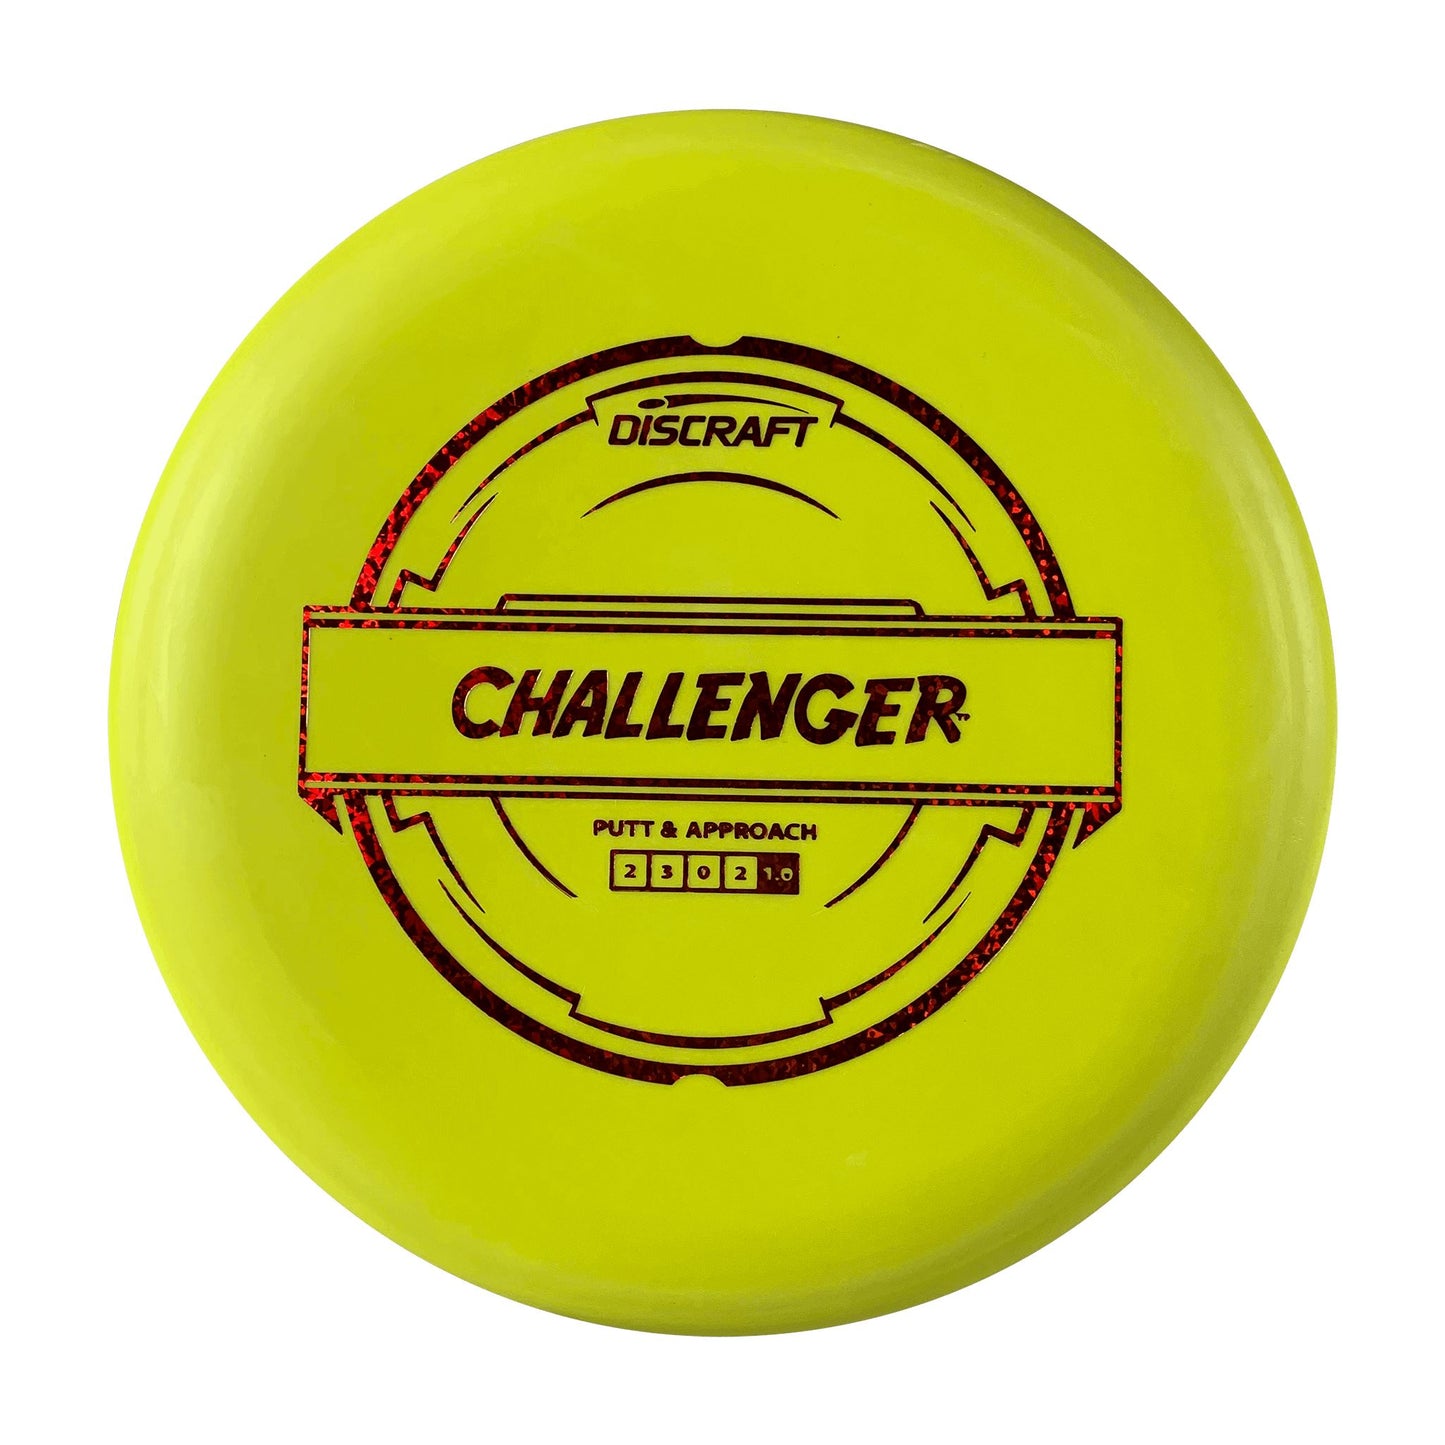 Pro D Challenger Disc Discraft yellow 173 